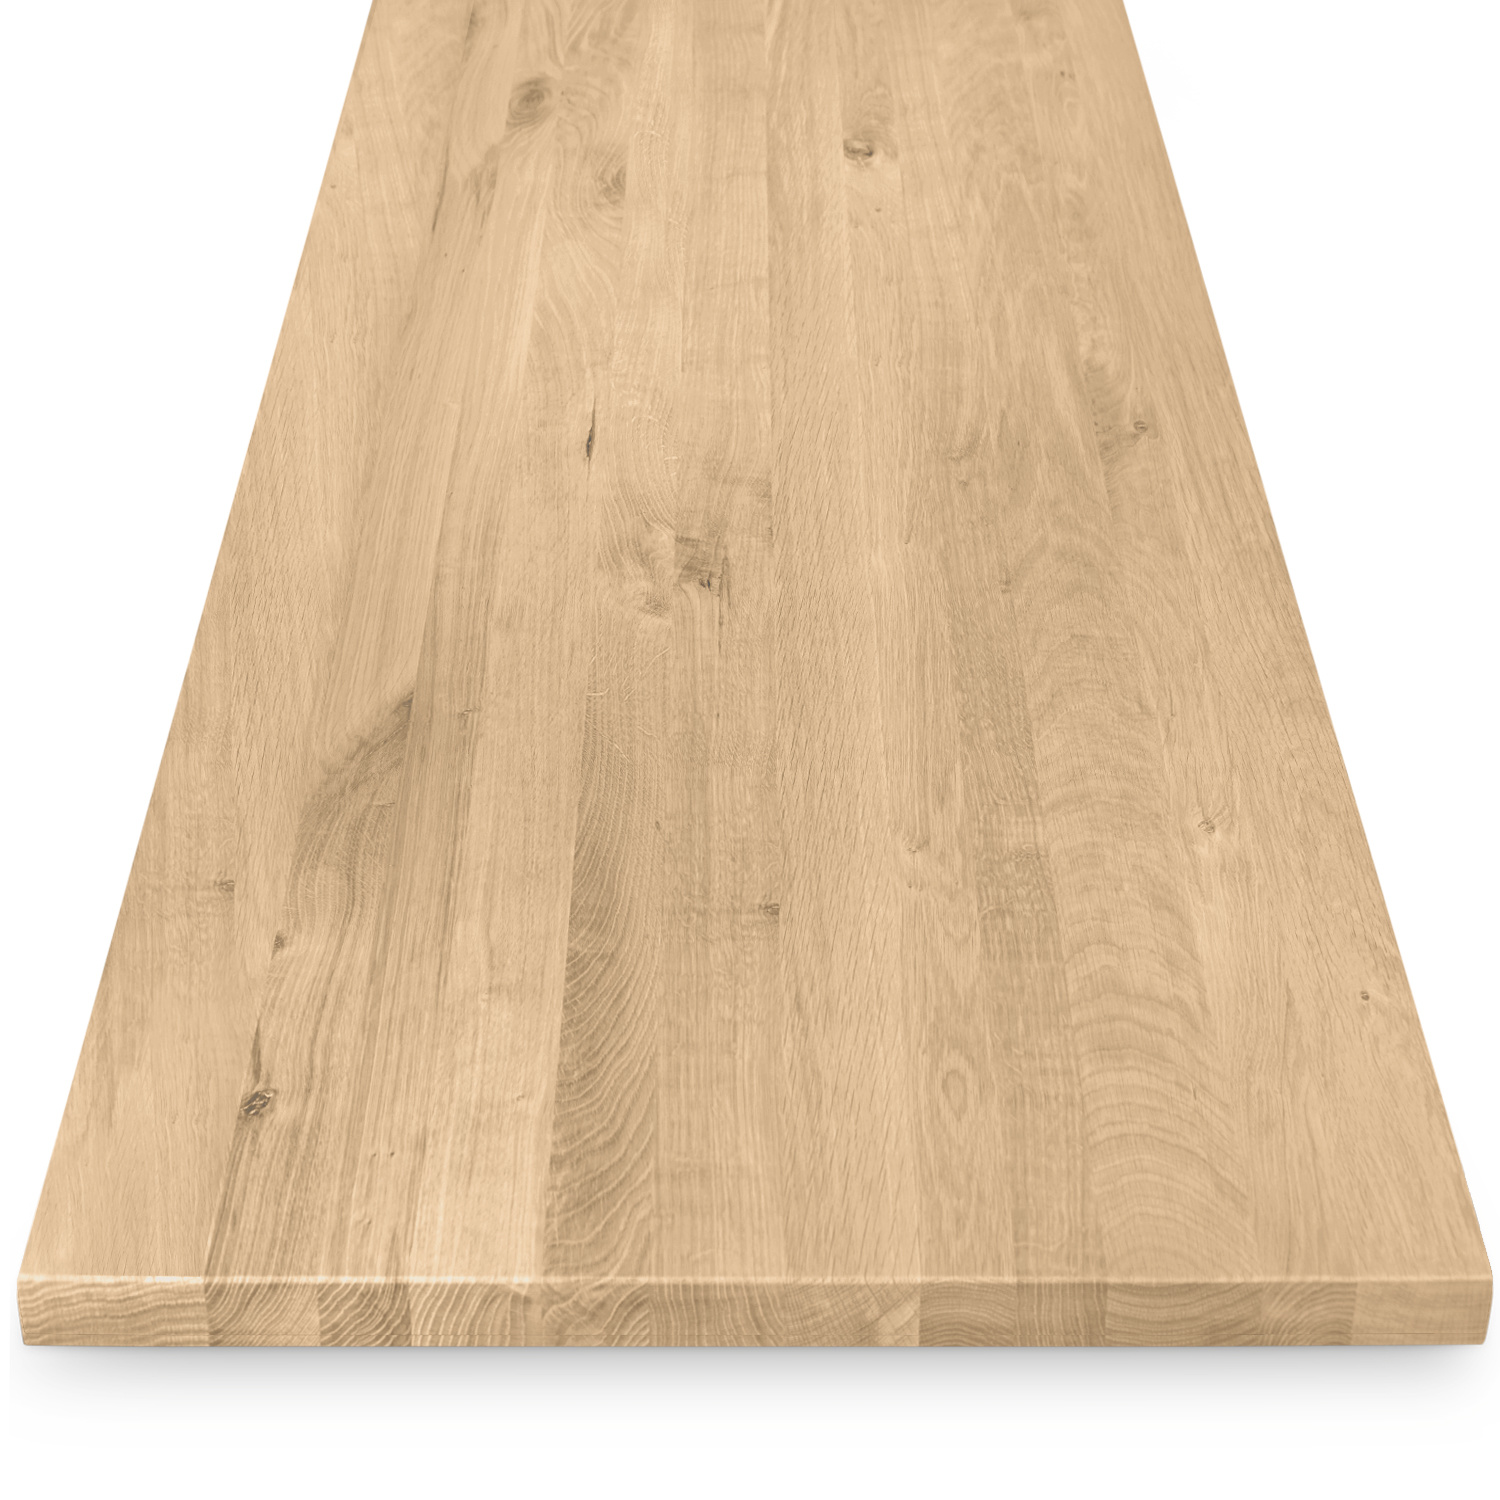  Tischplatte Eiche nach Maß - 4 cm dick - Eichenholz rustikal - Eiche Tischplatte massiv - verleimt & künstlich getrocknet (HF 8-12%) - 50-120x50-350 cm